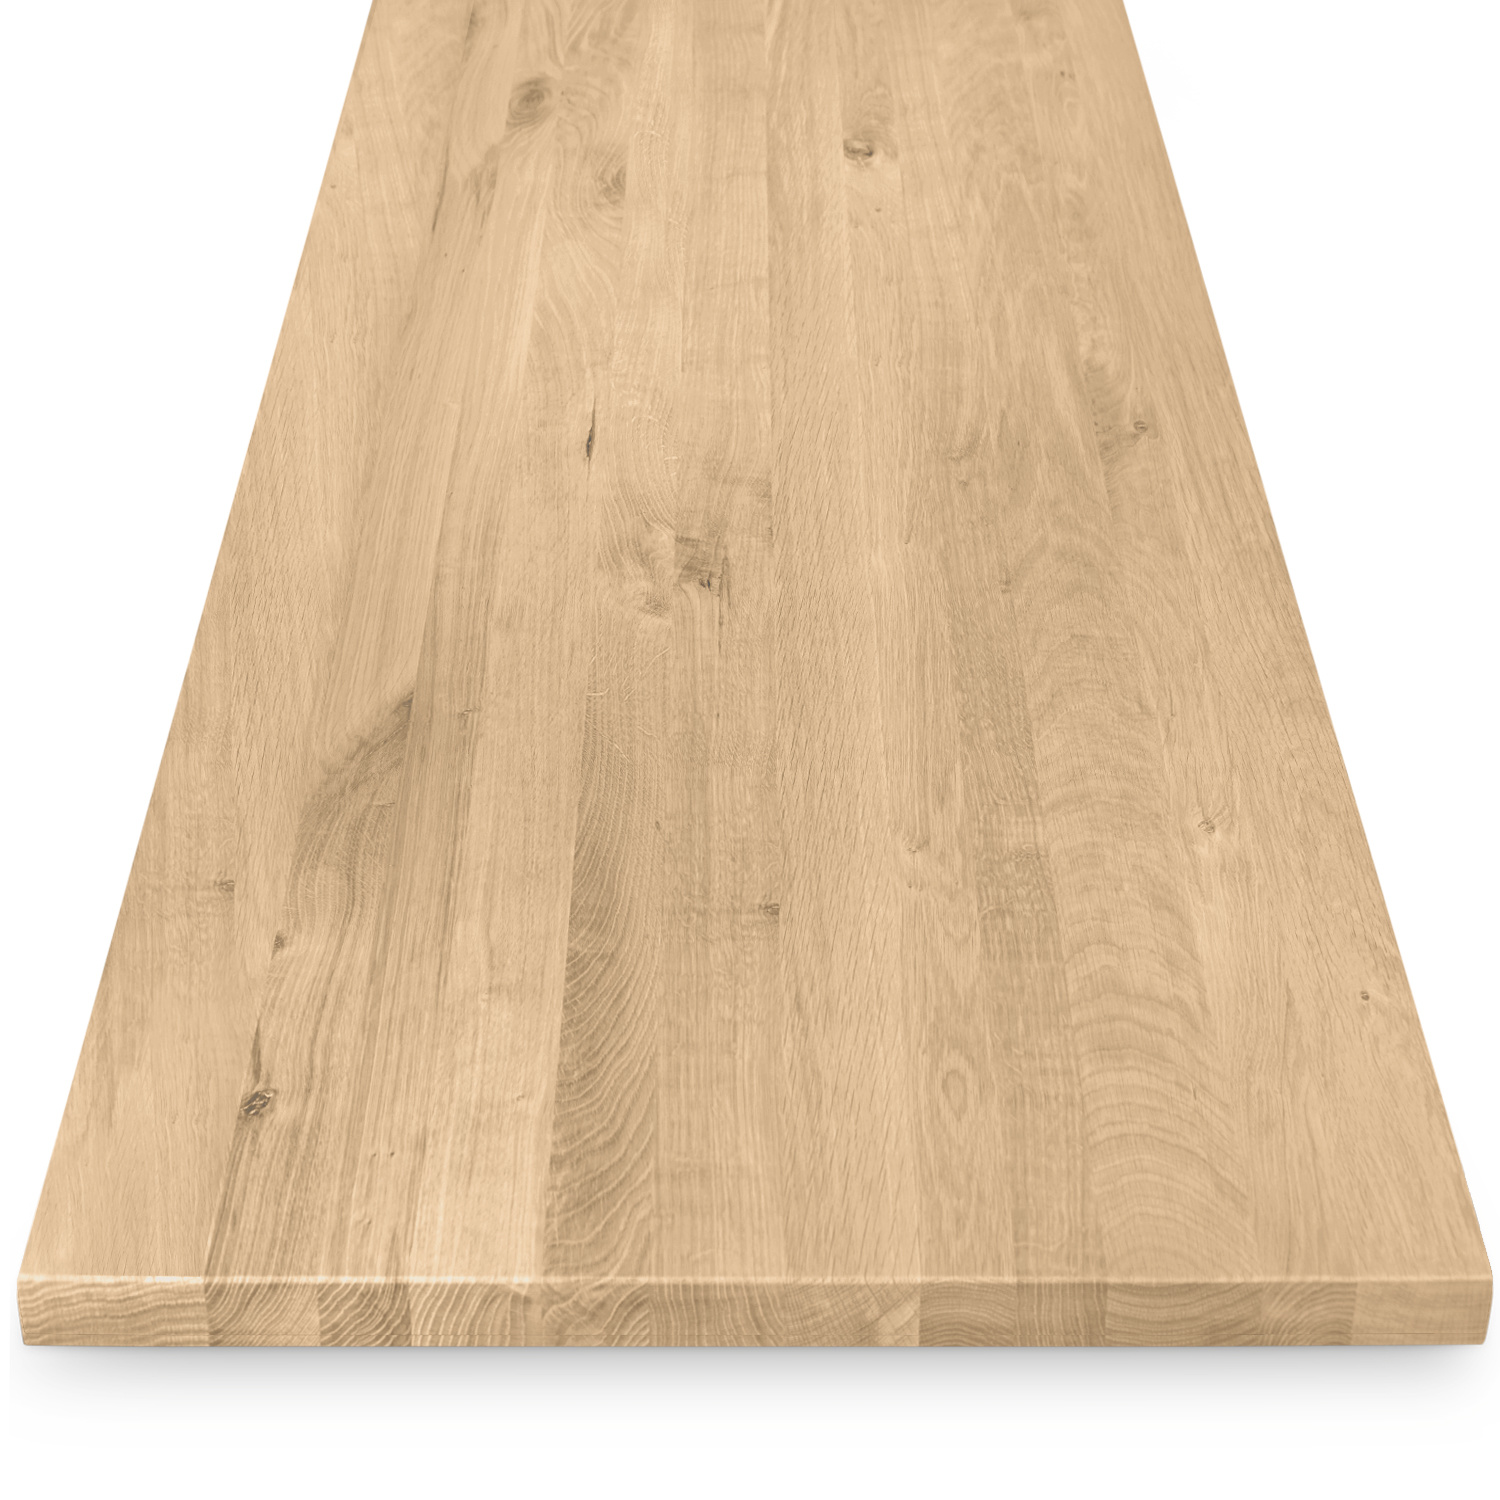  Tischplatte Eiche nach Maß - 4 cm dick - Eichenholz rustikal - Eiche Tischplatte massiv - verleimt & künstlich getrocknet (HF 8-12%) - 50-120x50-350 cm